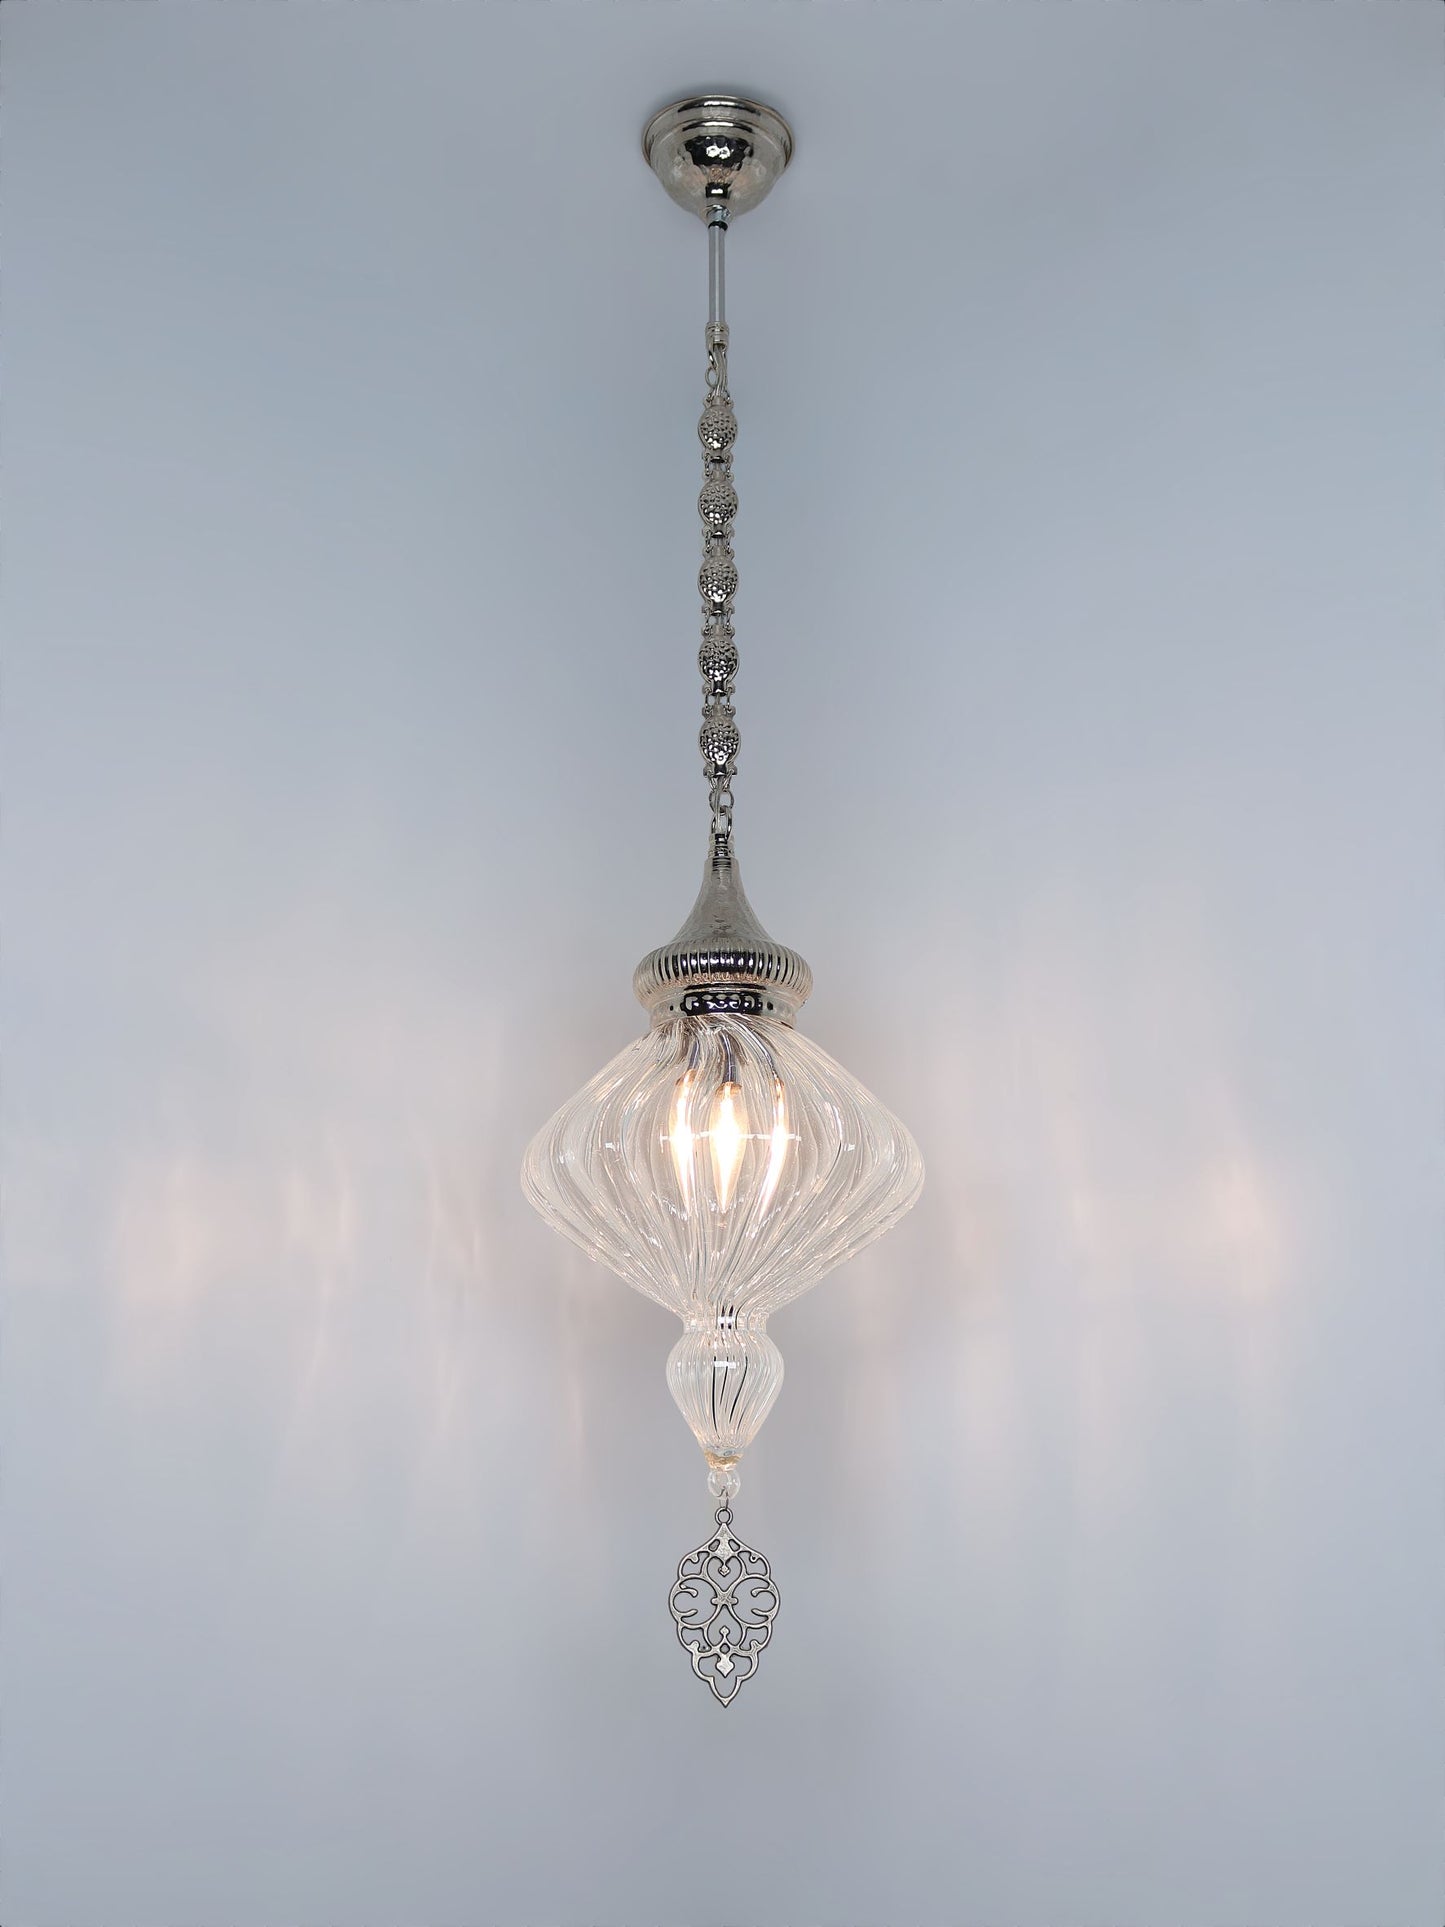 Handmade Pyrex Blown Glass Ceiling Lamp